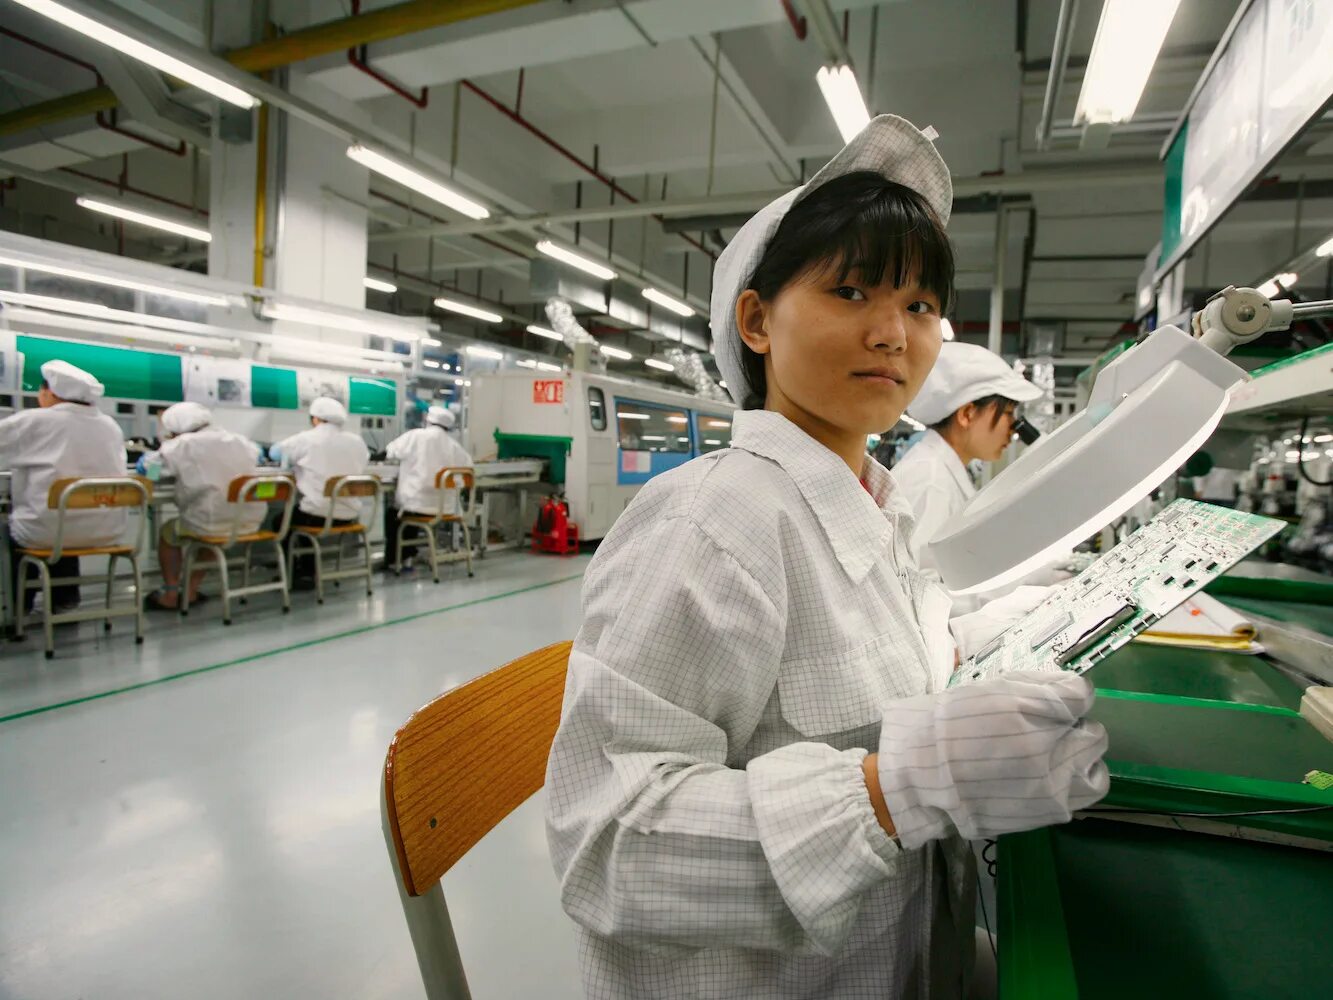 Фабрика Фоксконн Китай. Завод эпл в Китае. Китайцы на заводе. Рабочая Китая на фабрике.